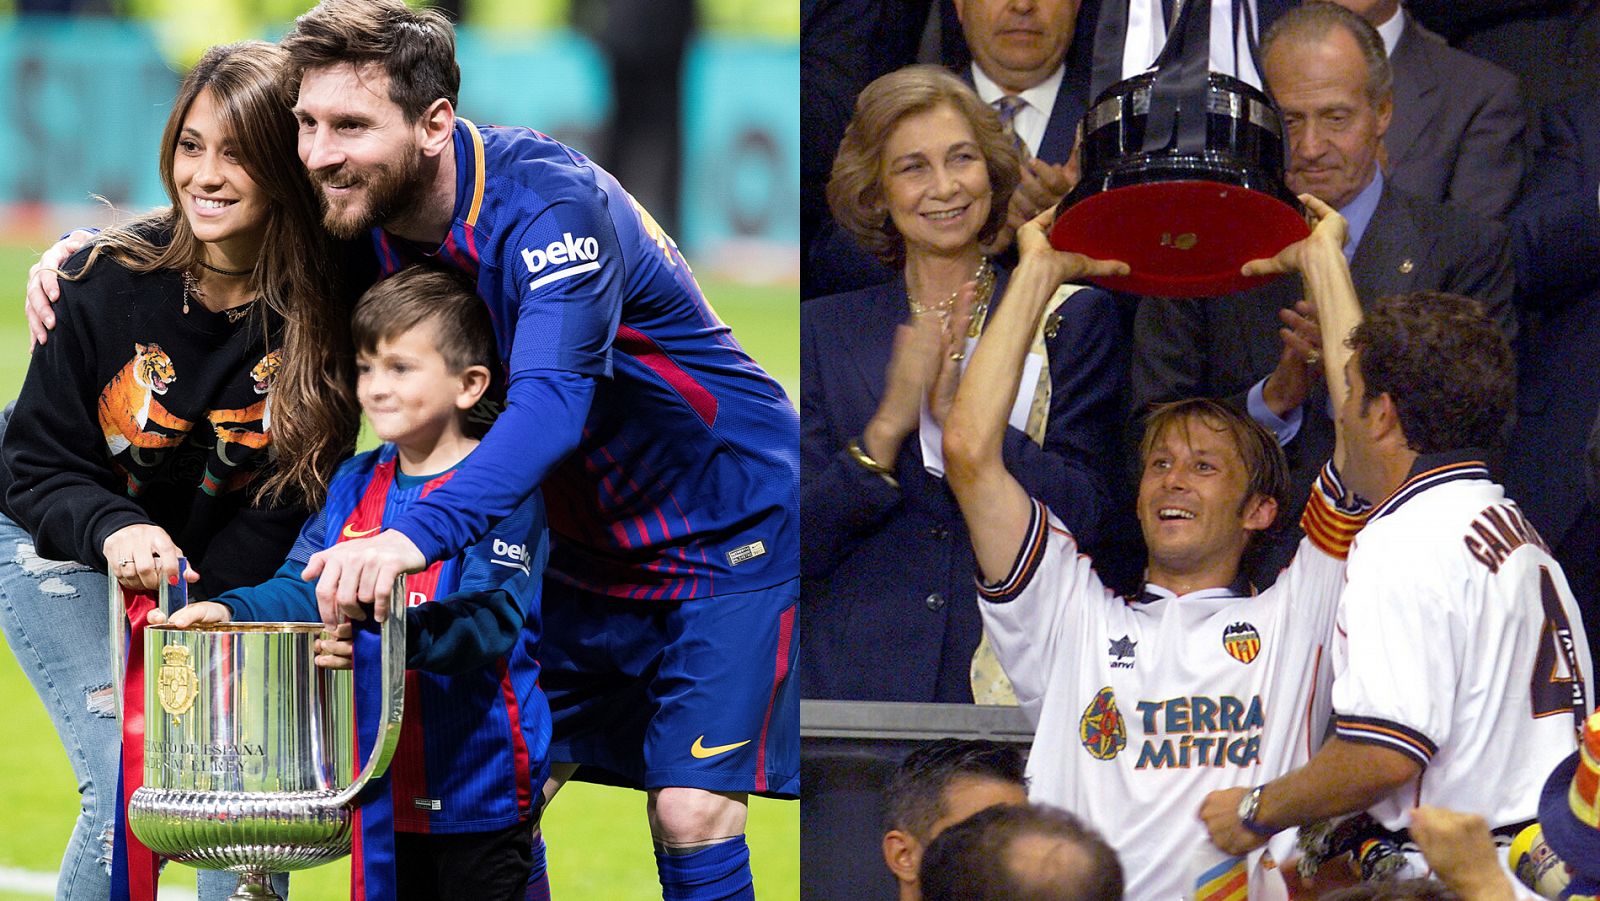 A la izquierda, Messi con la Copa de 2018, junto a su mujer, Antonella Rocuzzo, y el hijo de ambos; a la derecha, Mendieta alza la Copa de 1999.